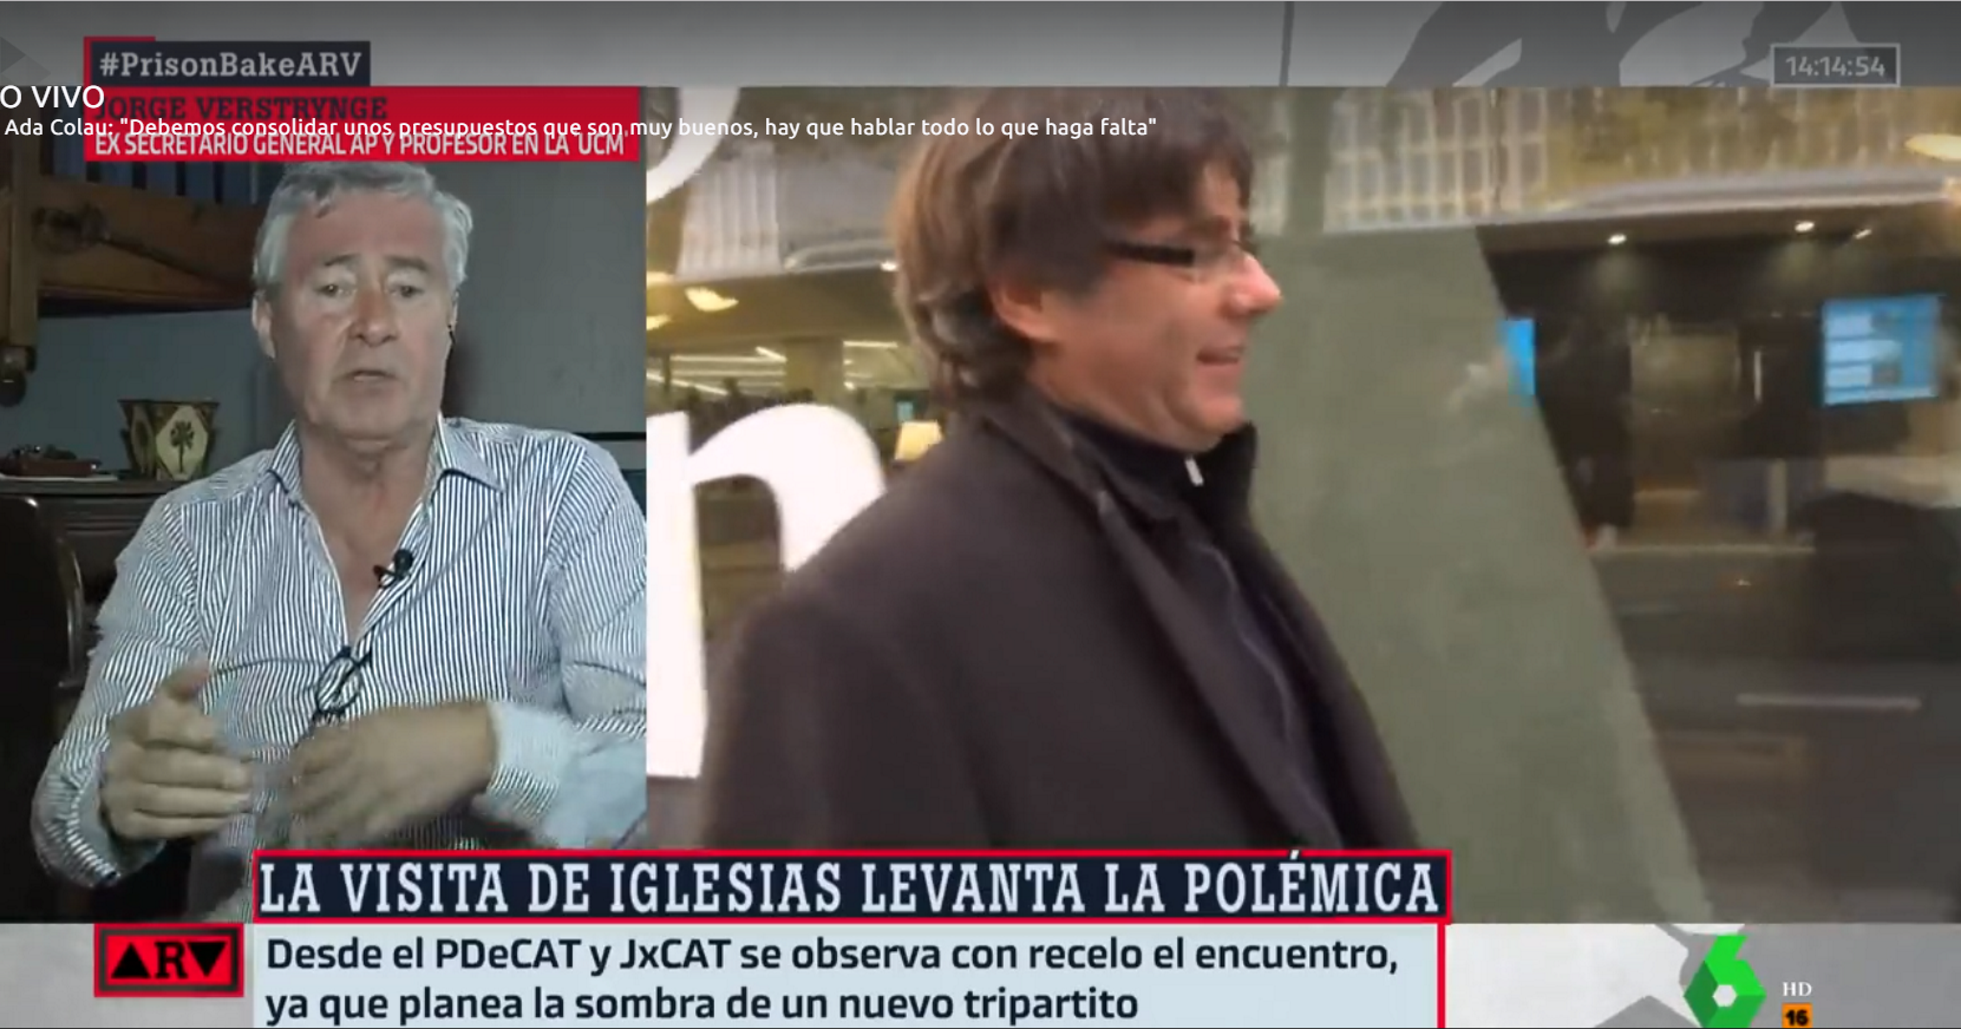 Verstrynge denuncia maniobras del "poder de Madrid" para poner a Junqueras contra Puigdemont